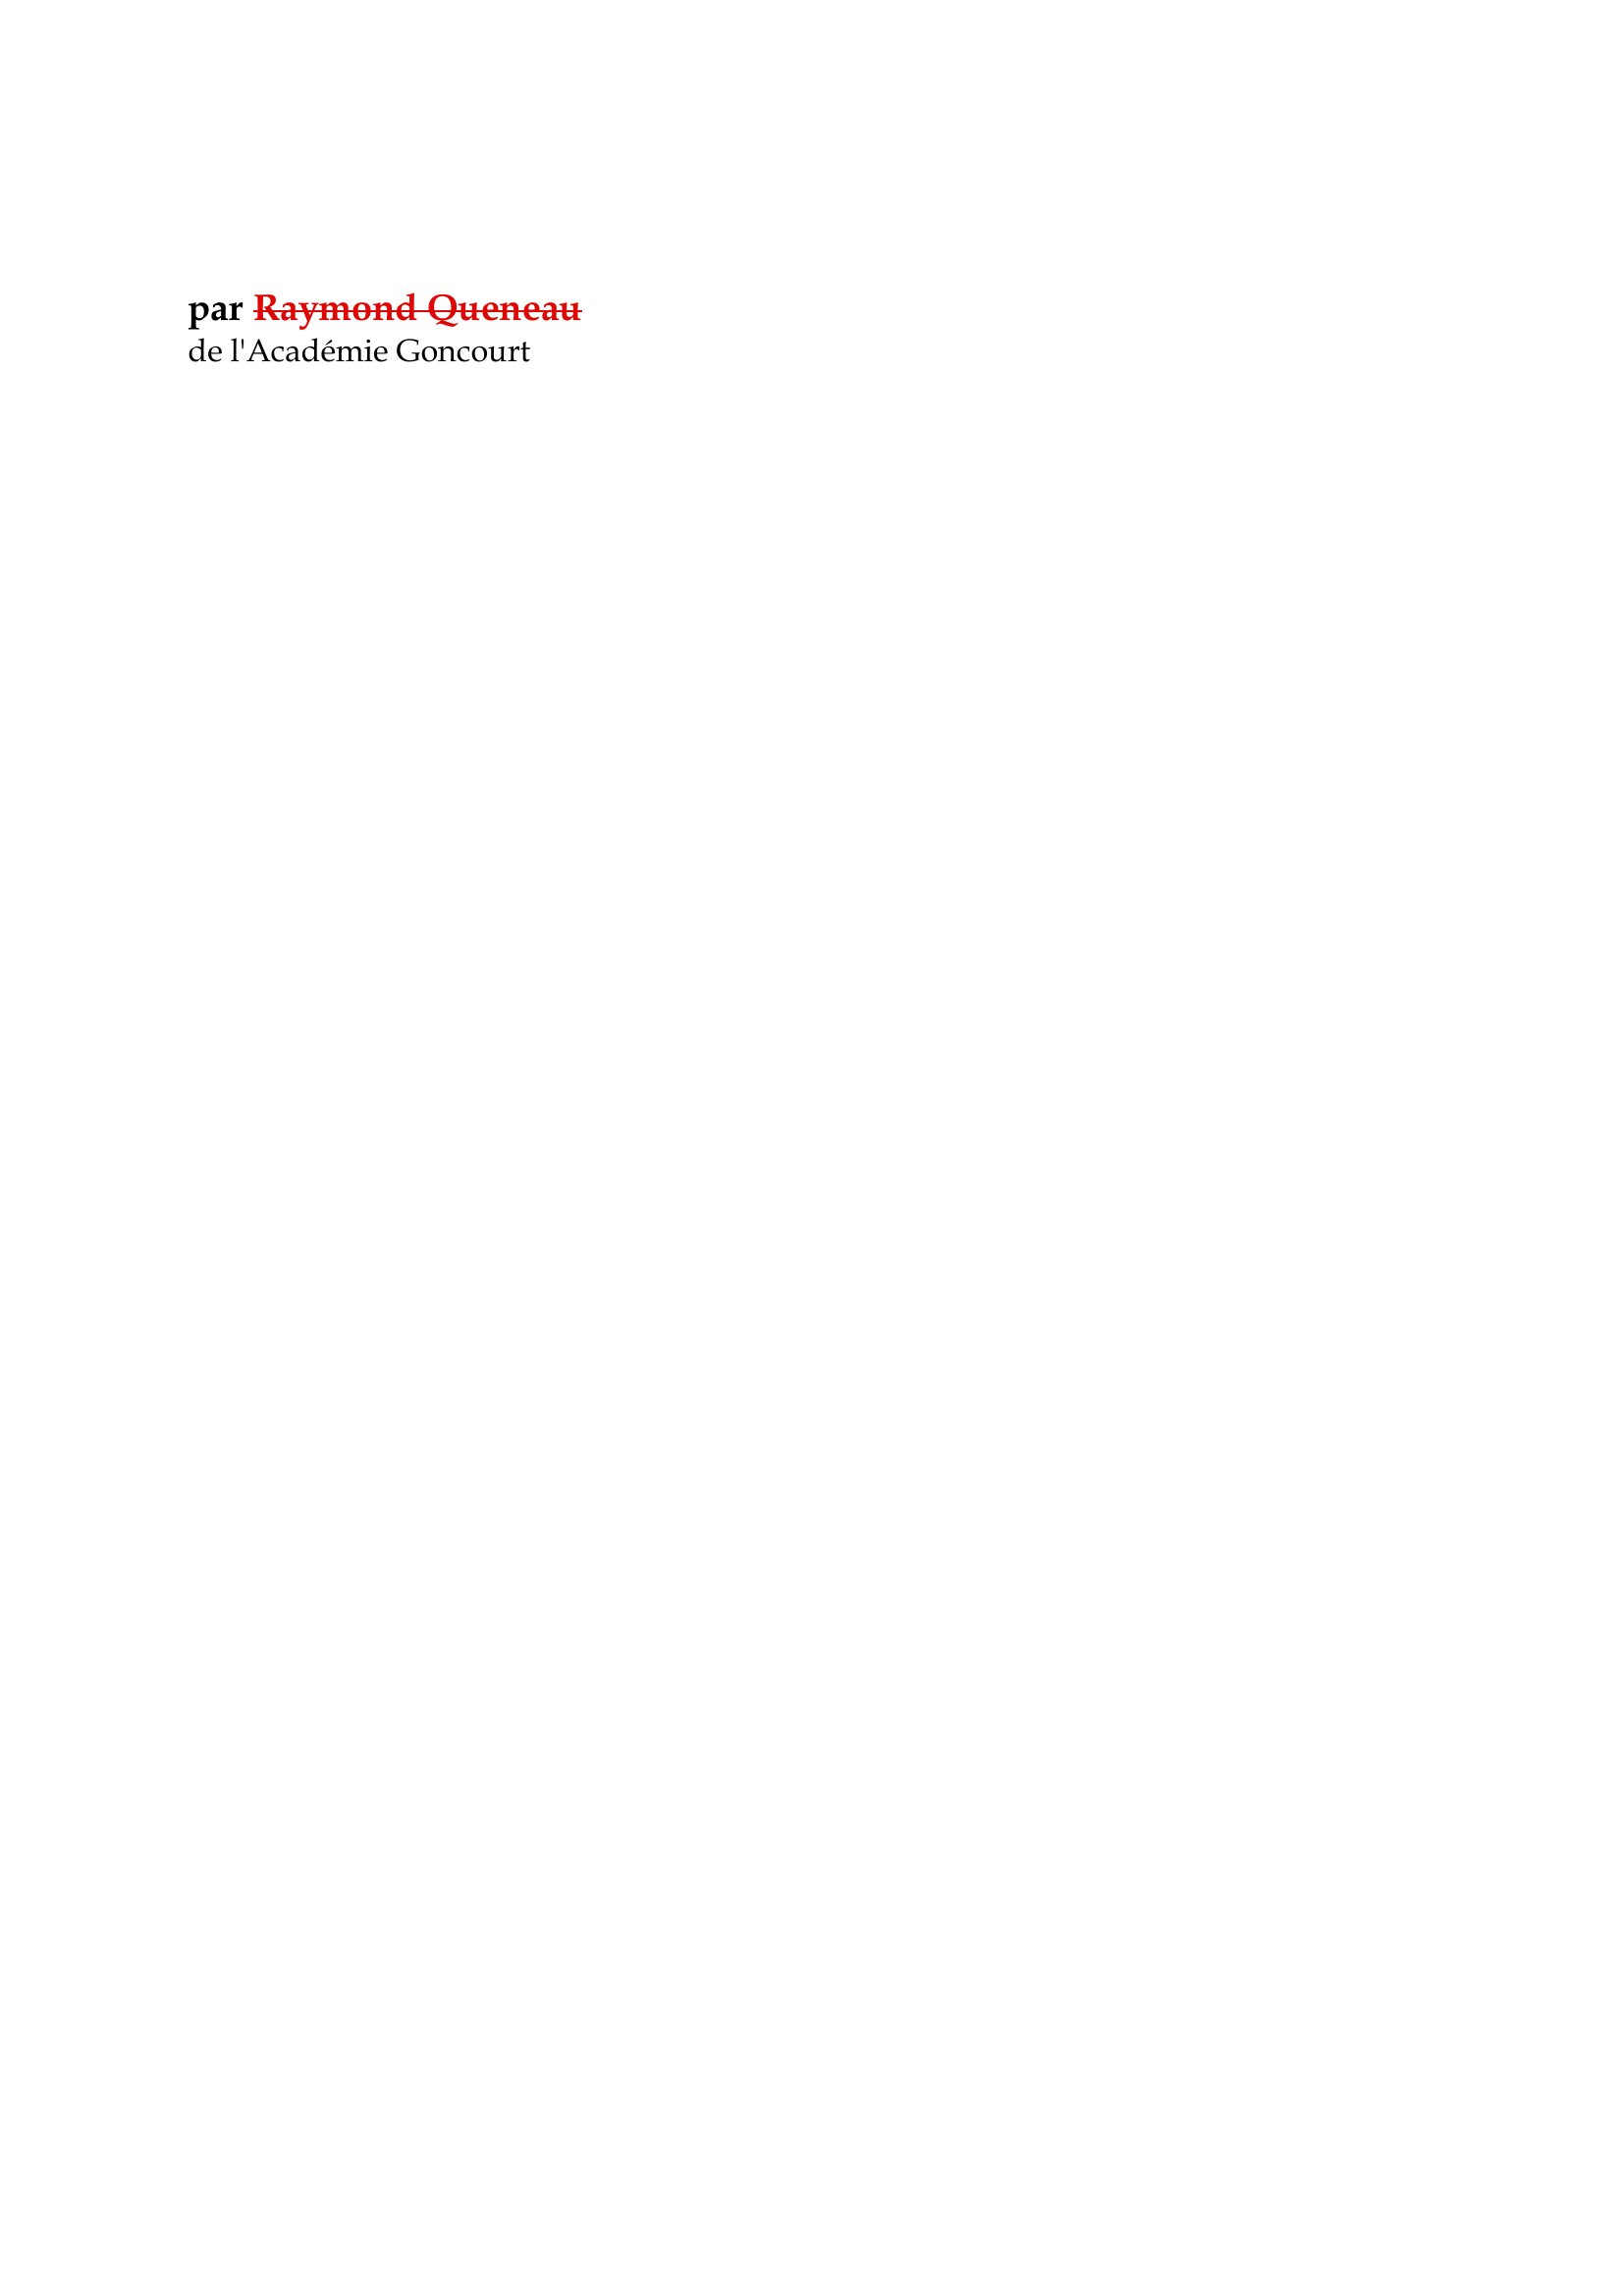 Prévisualisation du document Nicolas Boileau

par Raymond Queneau
de l'Académie Goncourt

Samuel Johnson, dans la notice